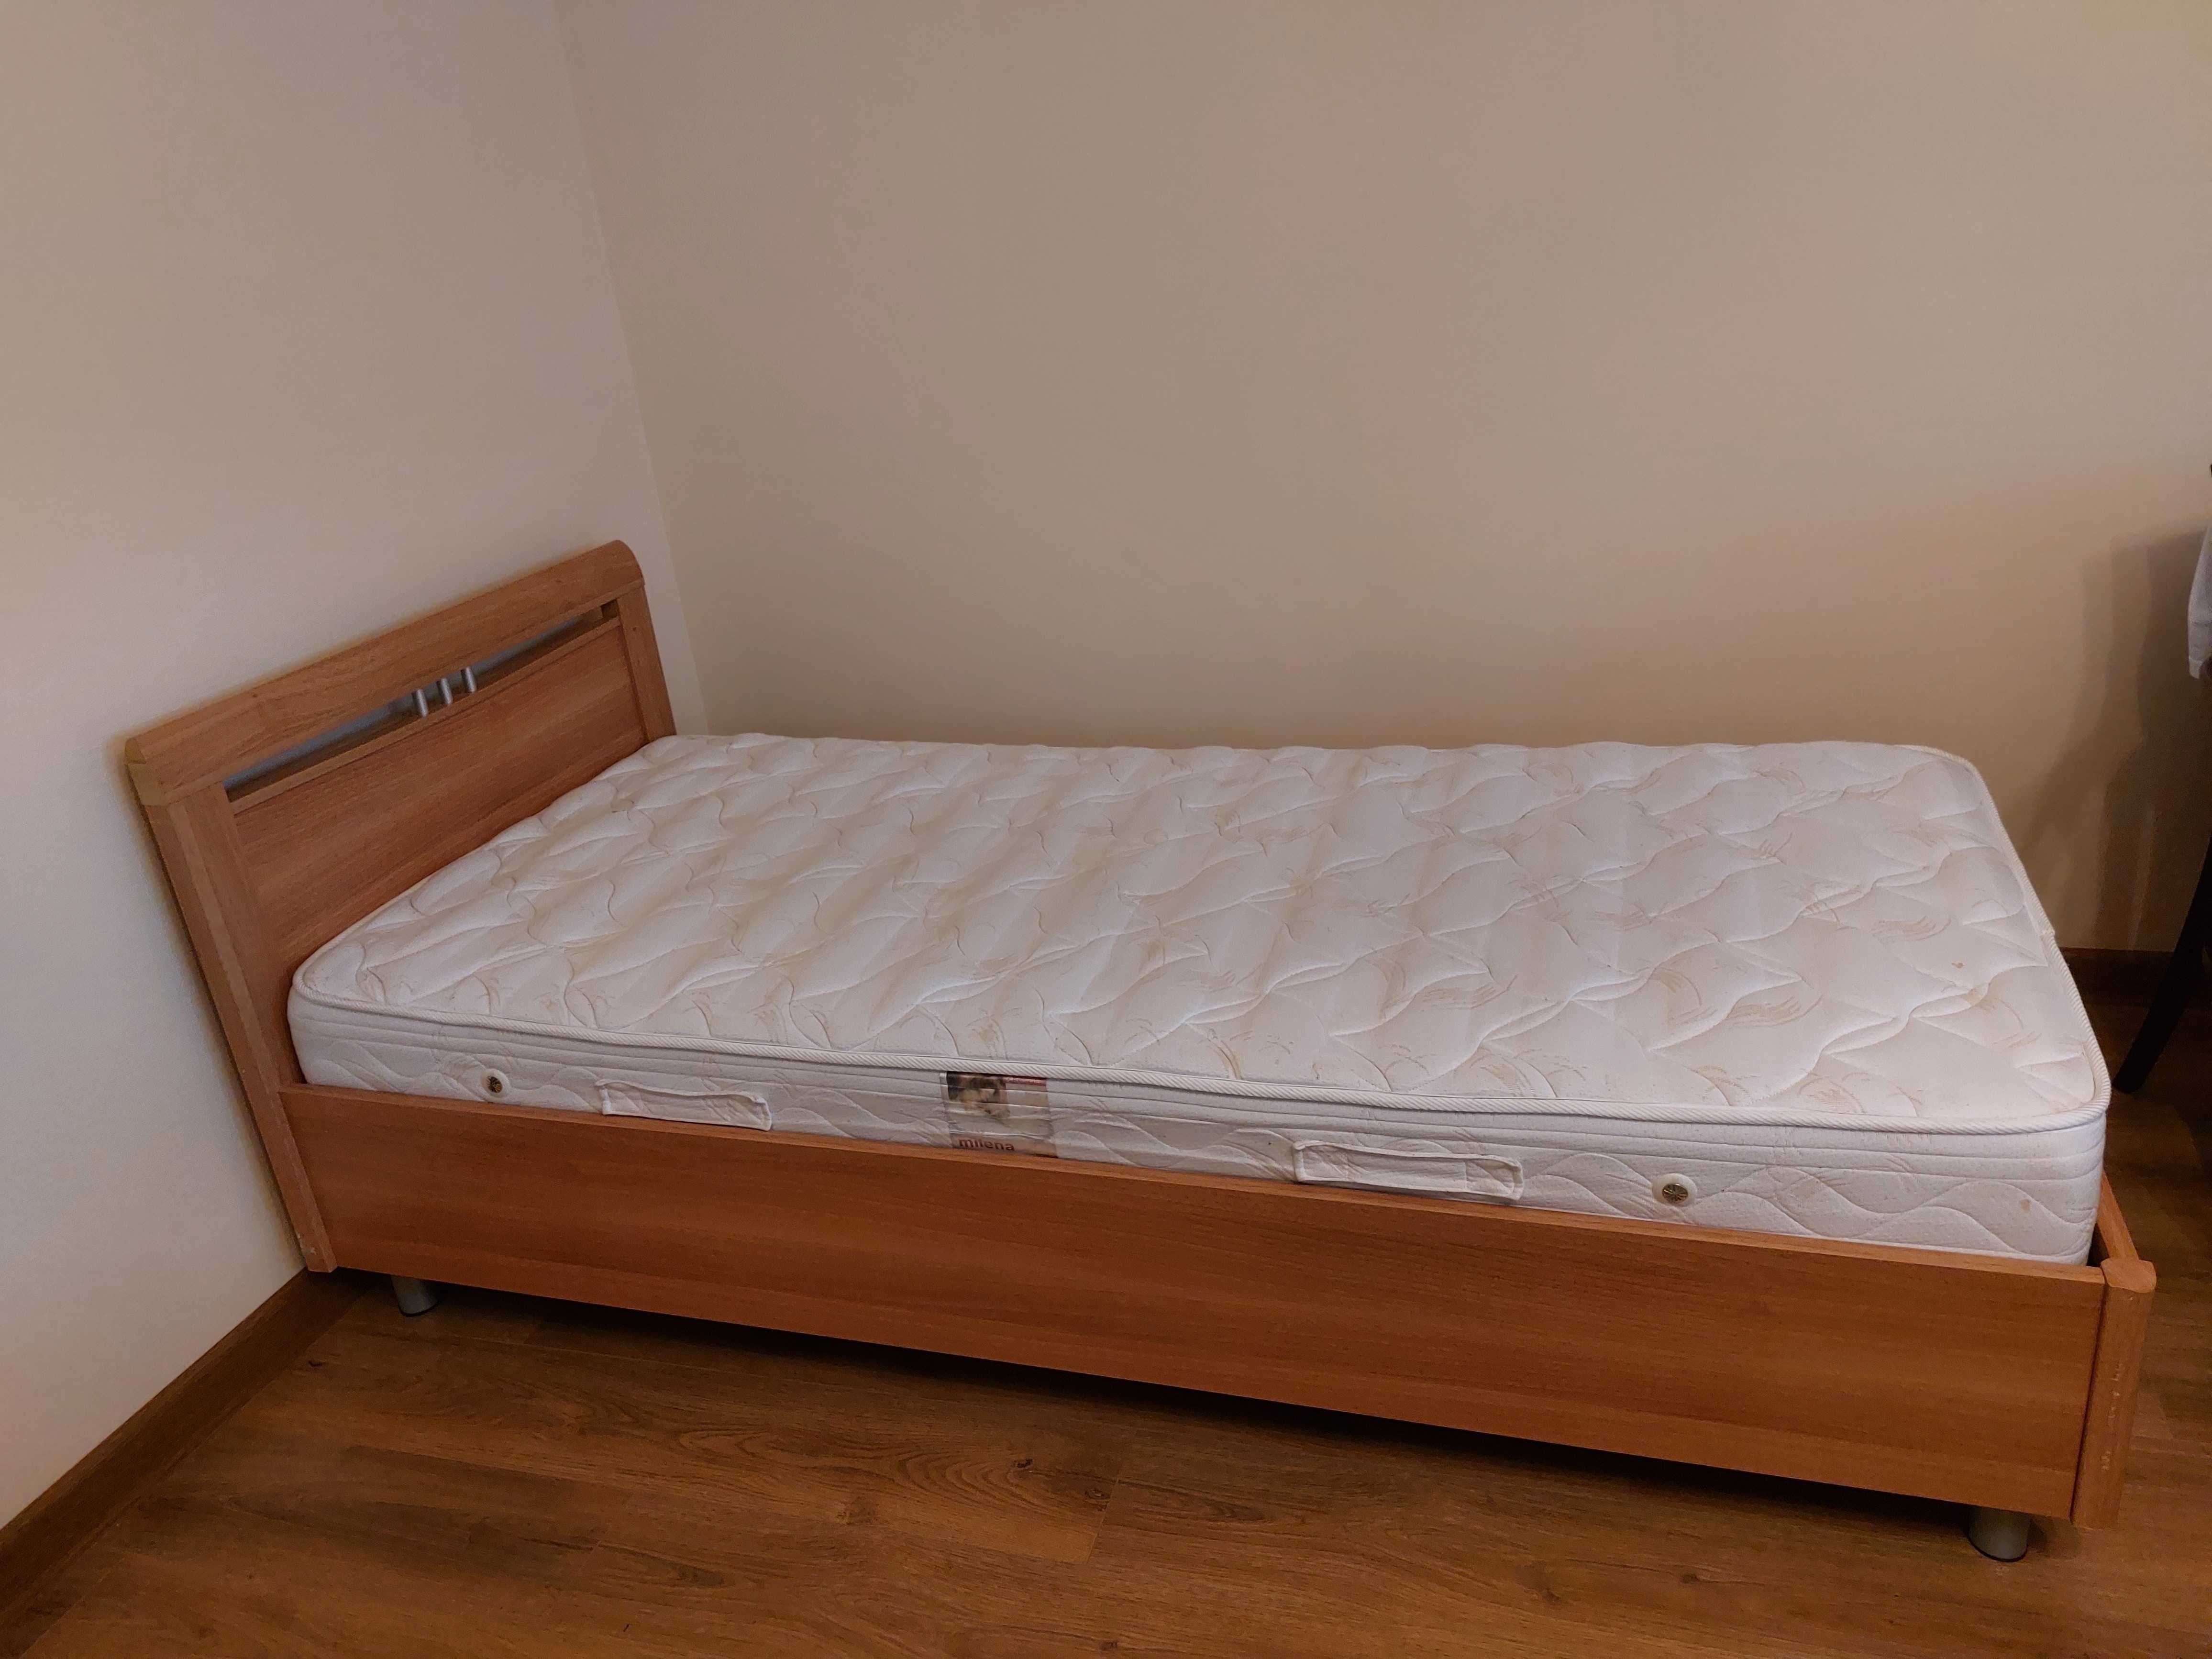 Продаю односпальную кровать 90см×200см